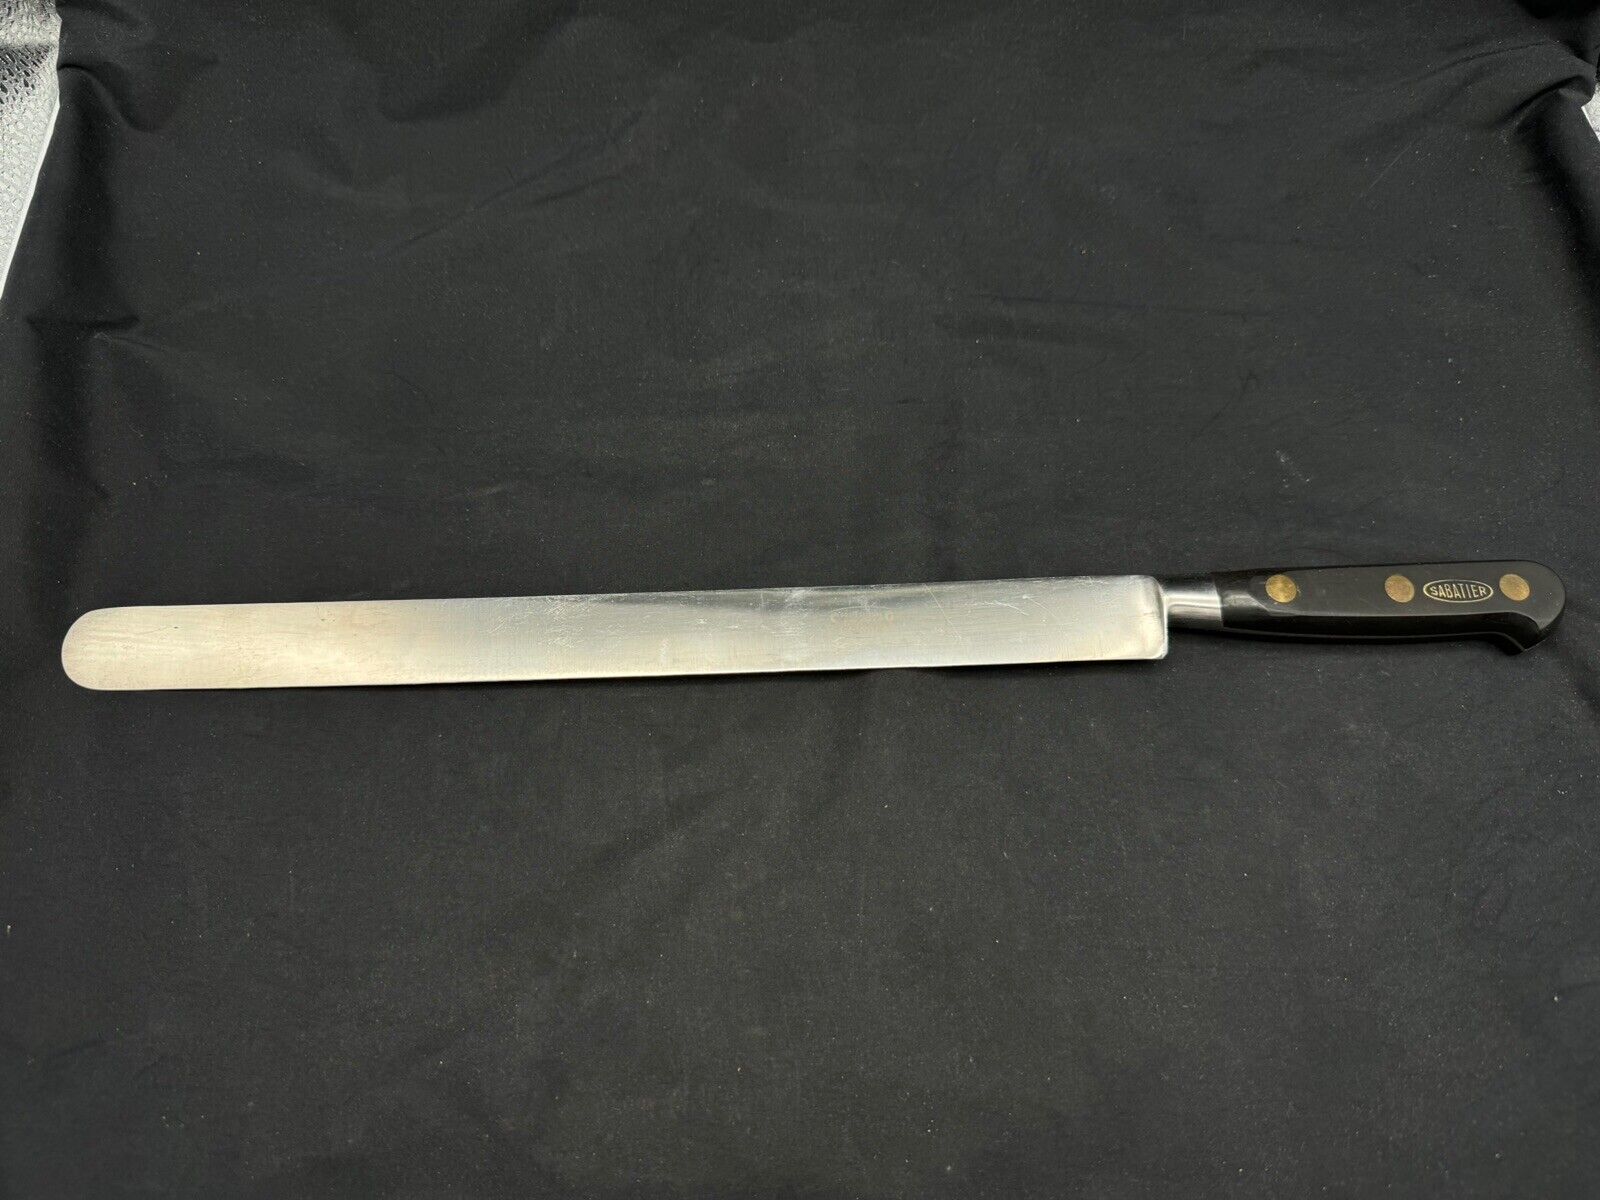 Vintage Sabatier Professional 12 inch Blade Round Nose Slicer Knife